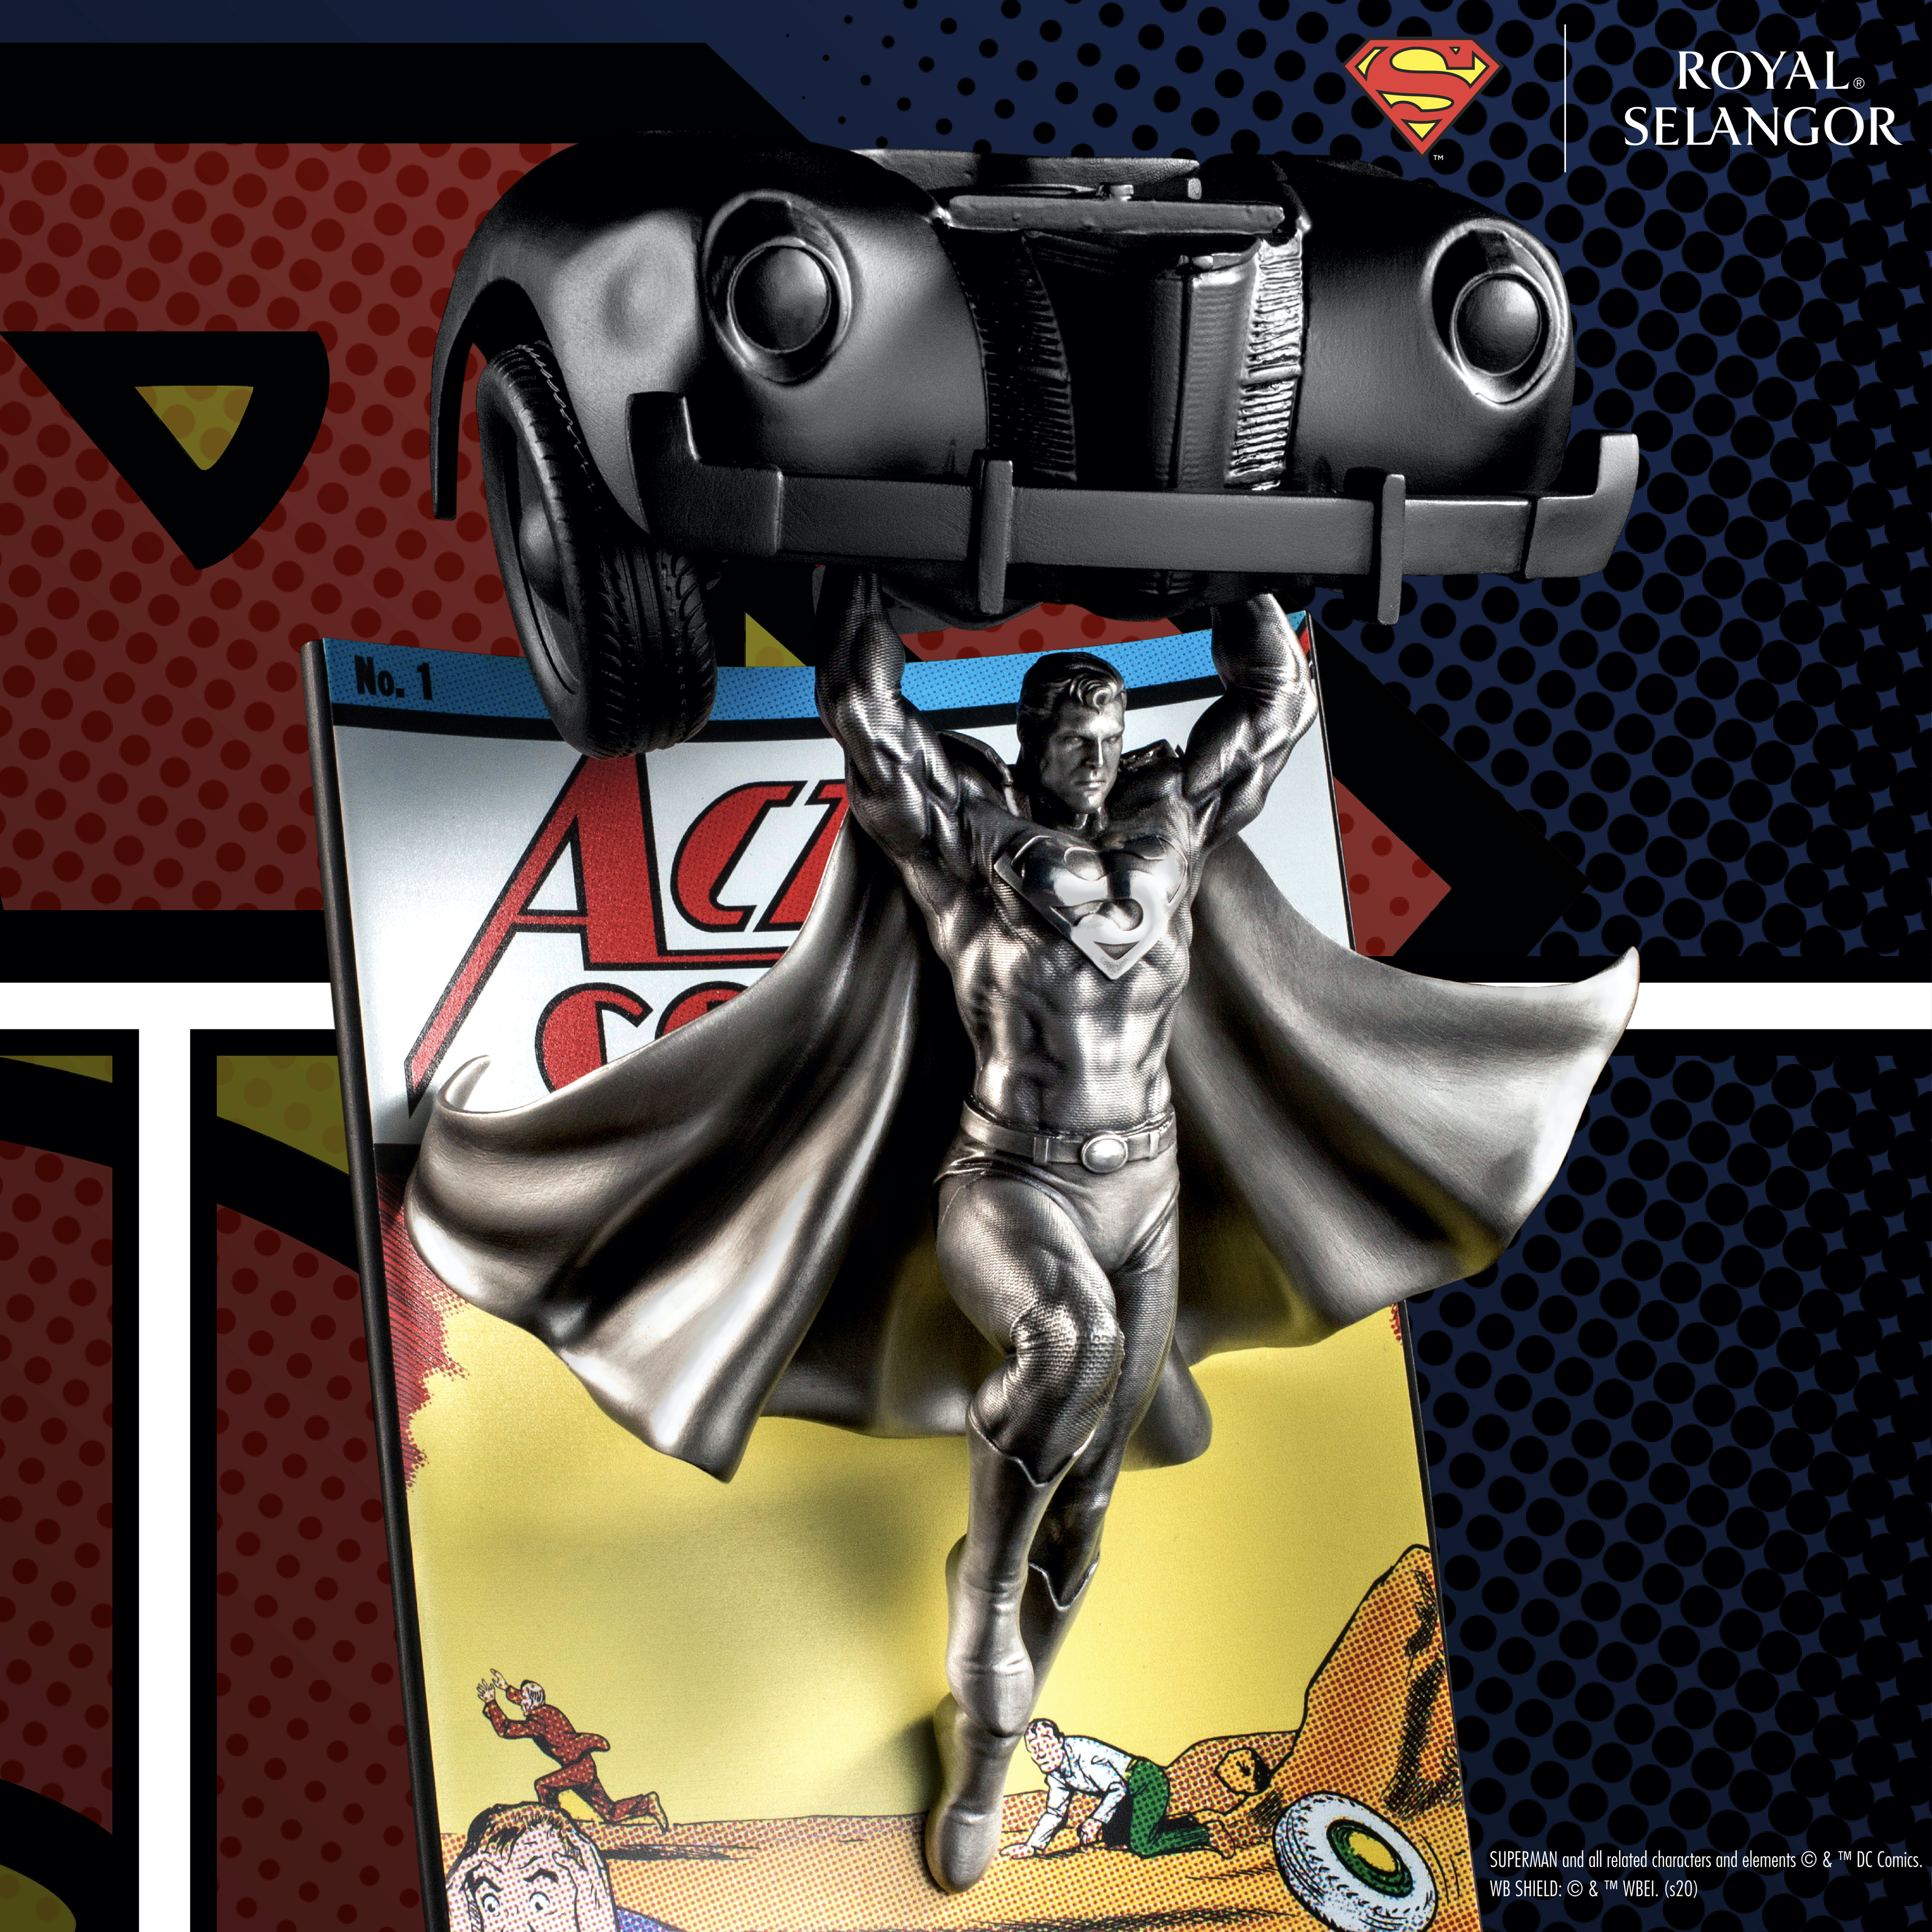 スーパーマン "Action Comics #1" リミテッドエディション (世界限定800体)